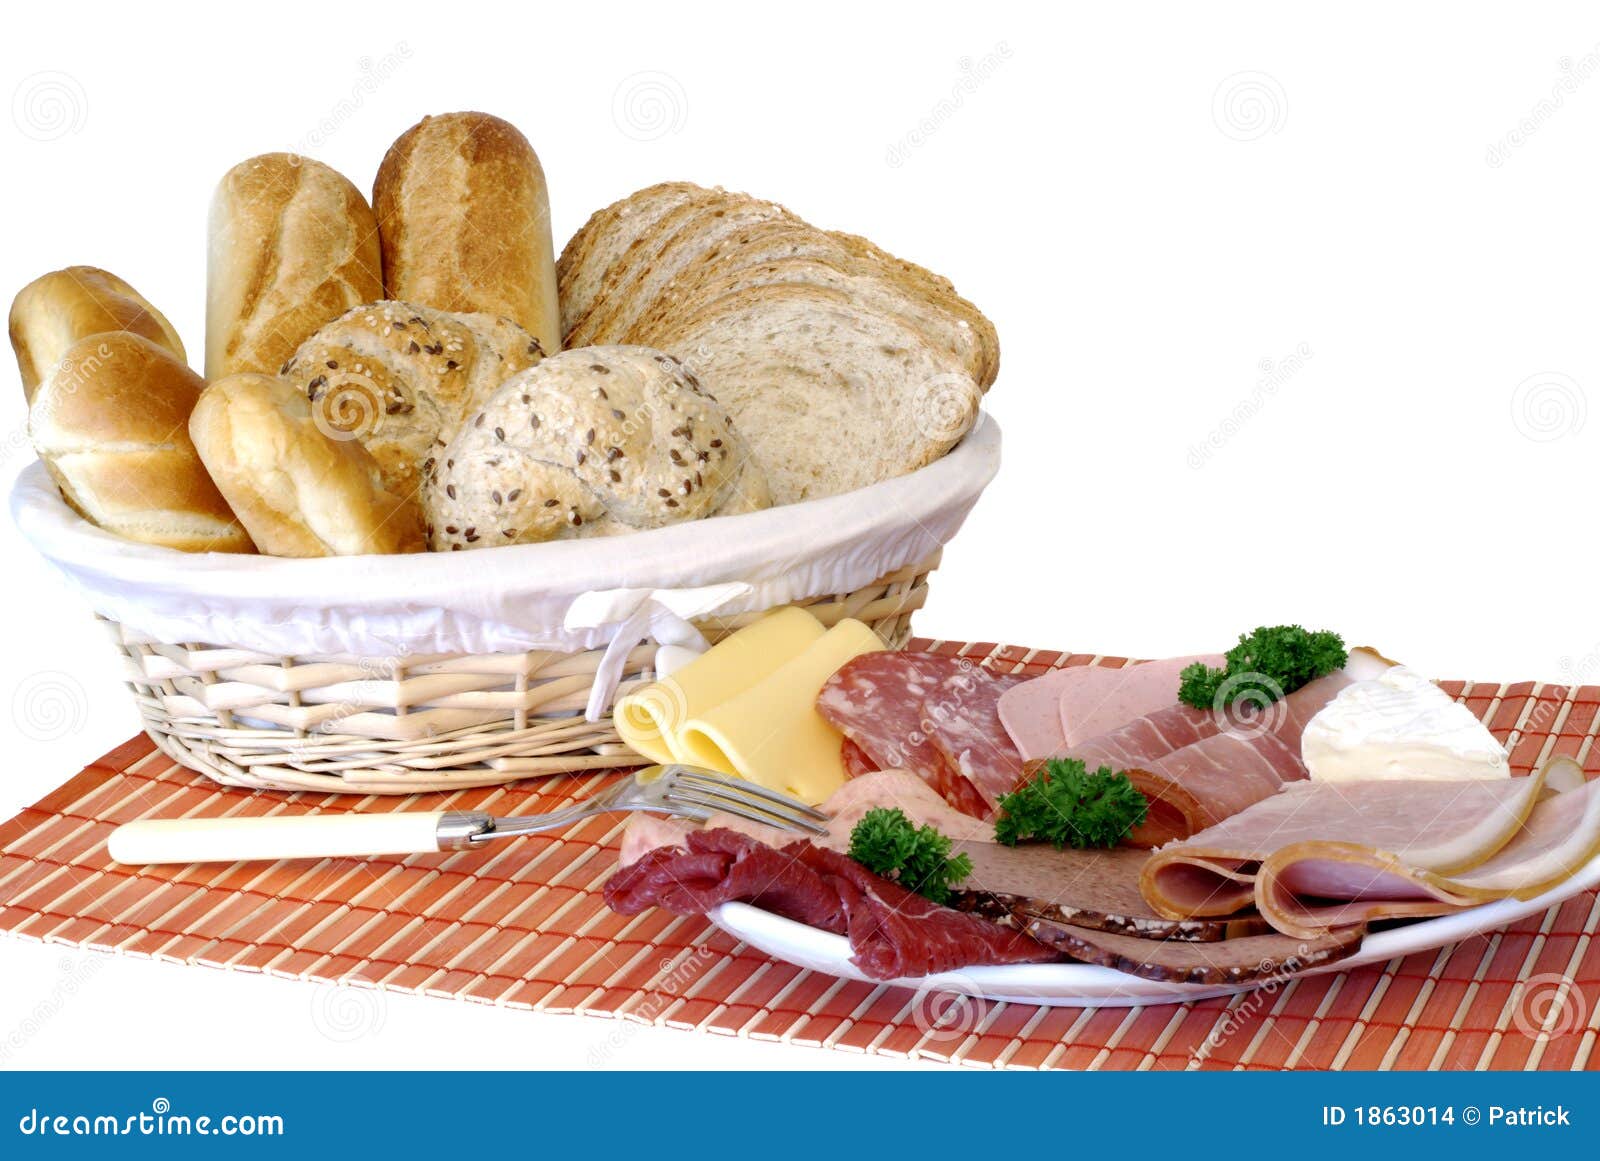 ontbijt-vers-gebakken-brood-kaas-en-vlee